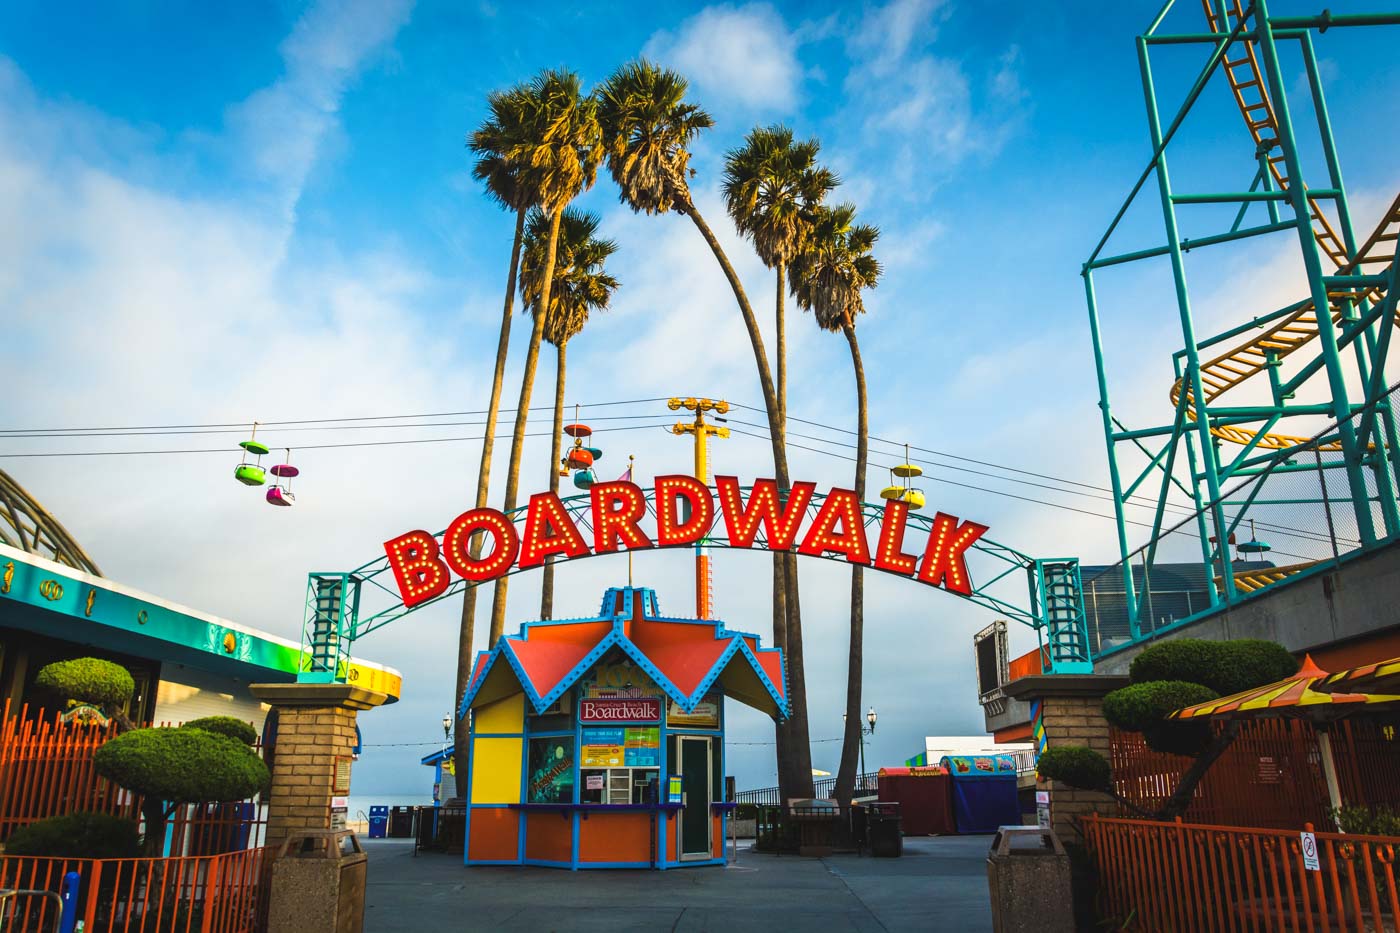 The colorful entrance to Boardwalk theme park in Santa Cruz.